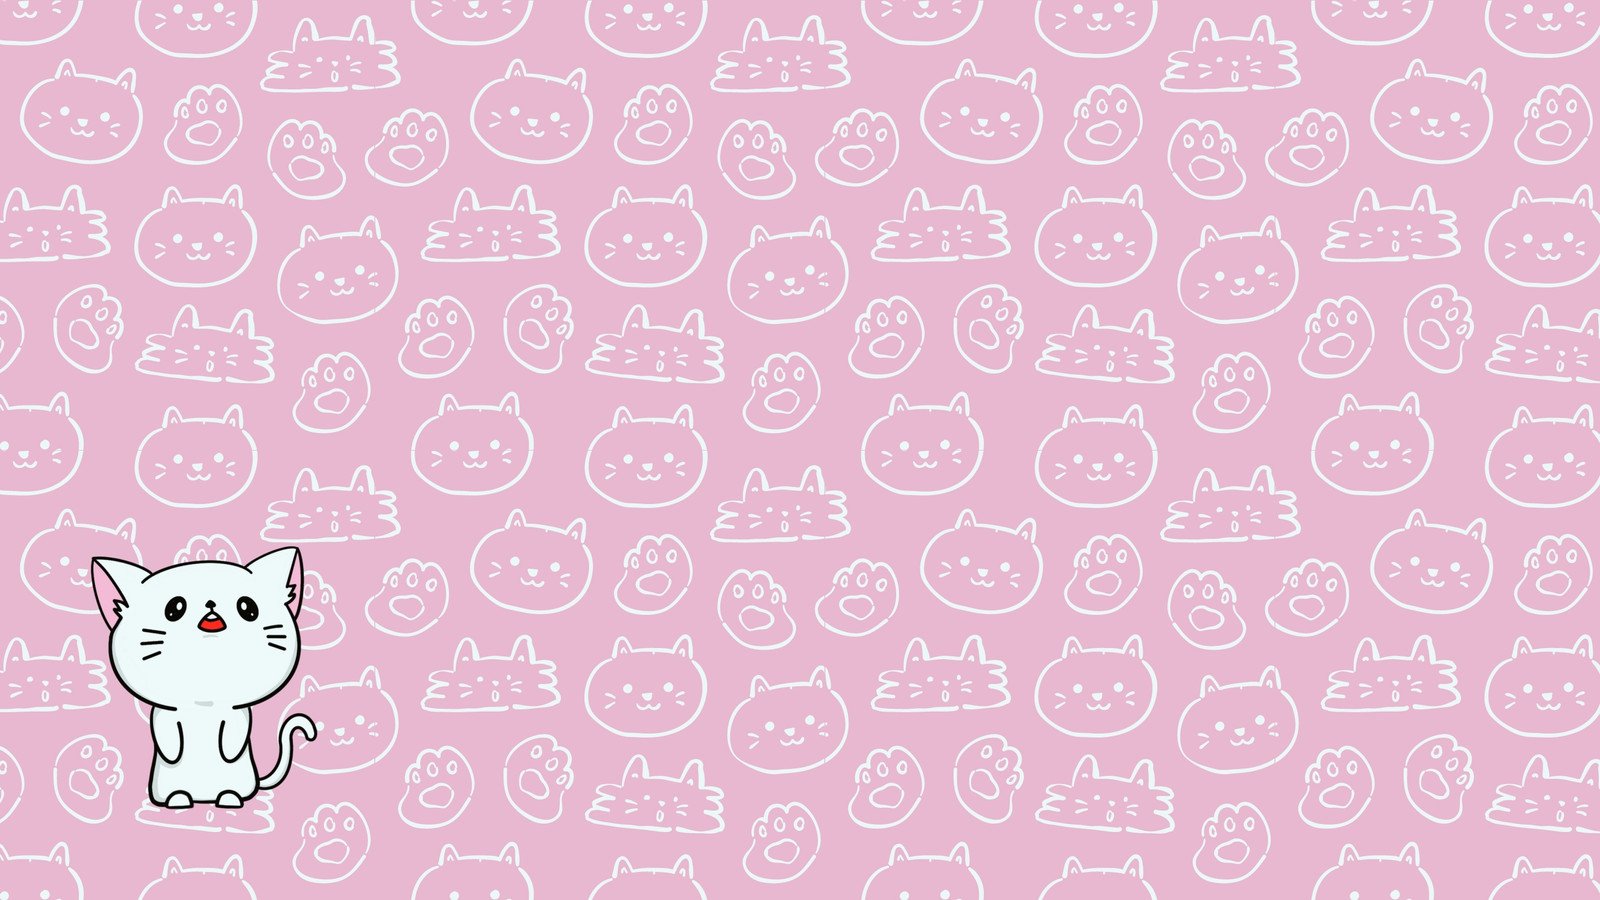 Hãy cùng khám phá những mẫu cute desktop wallpaper đáng yêu để tạo cho màn hình máy tính của bạn một diện mạo mới tinh tế và dễ thương hơn nhé! Những chú thỏ, gấu trúc hay hình ảnh hoạt hình ngộ nghĩnh sẽ khiến đôi mắt bạn thỏa mãn.